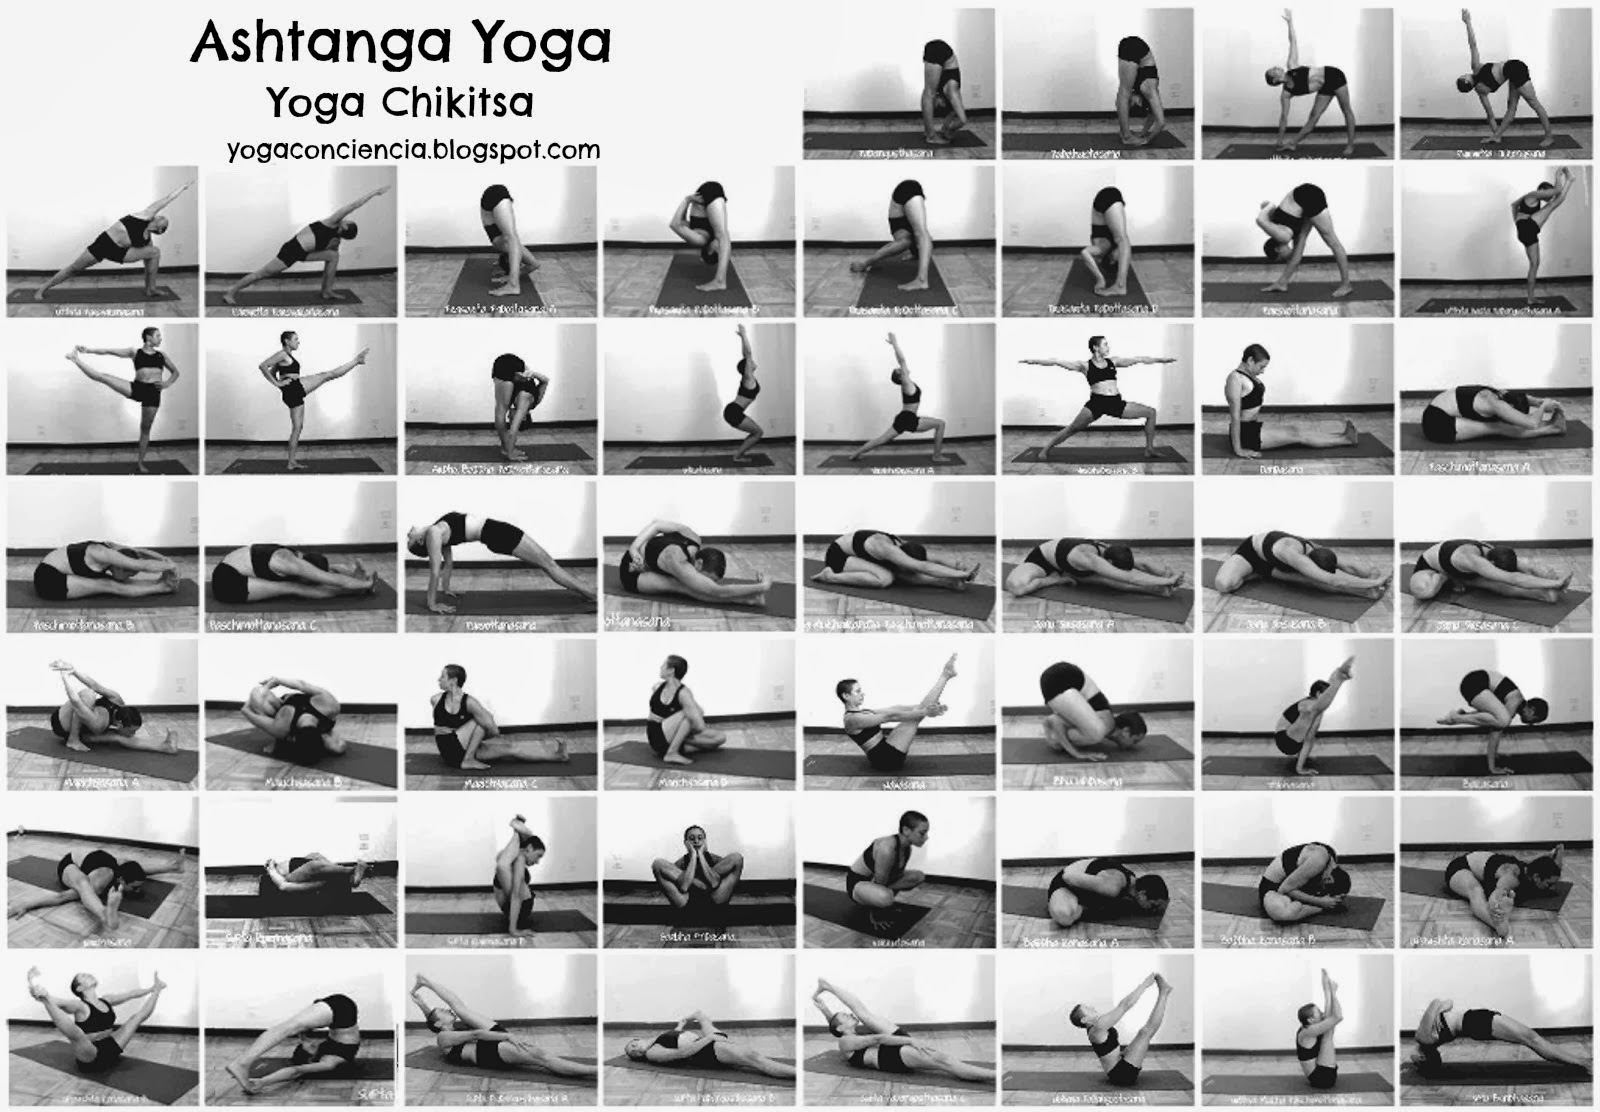 Ashtanga yoga yoga chikitsa